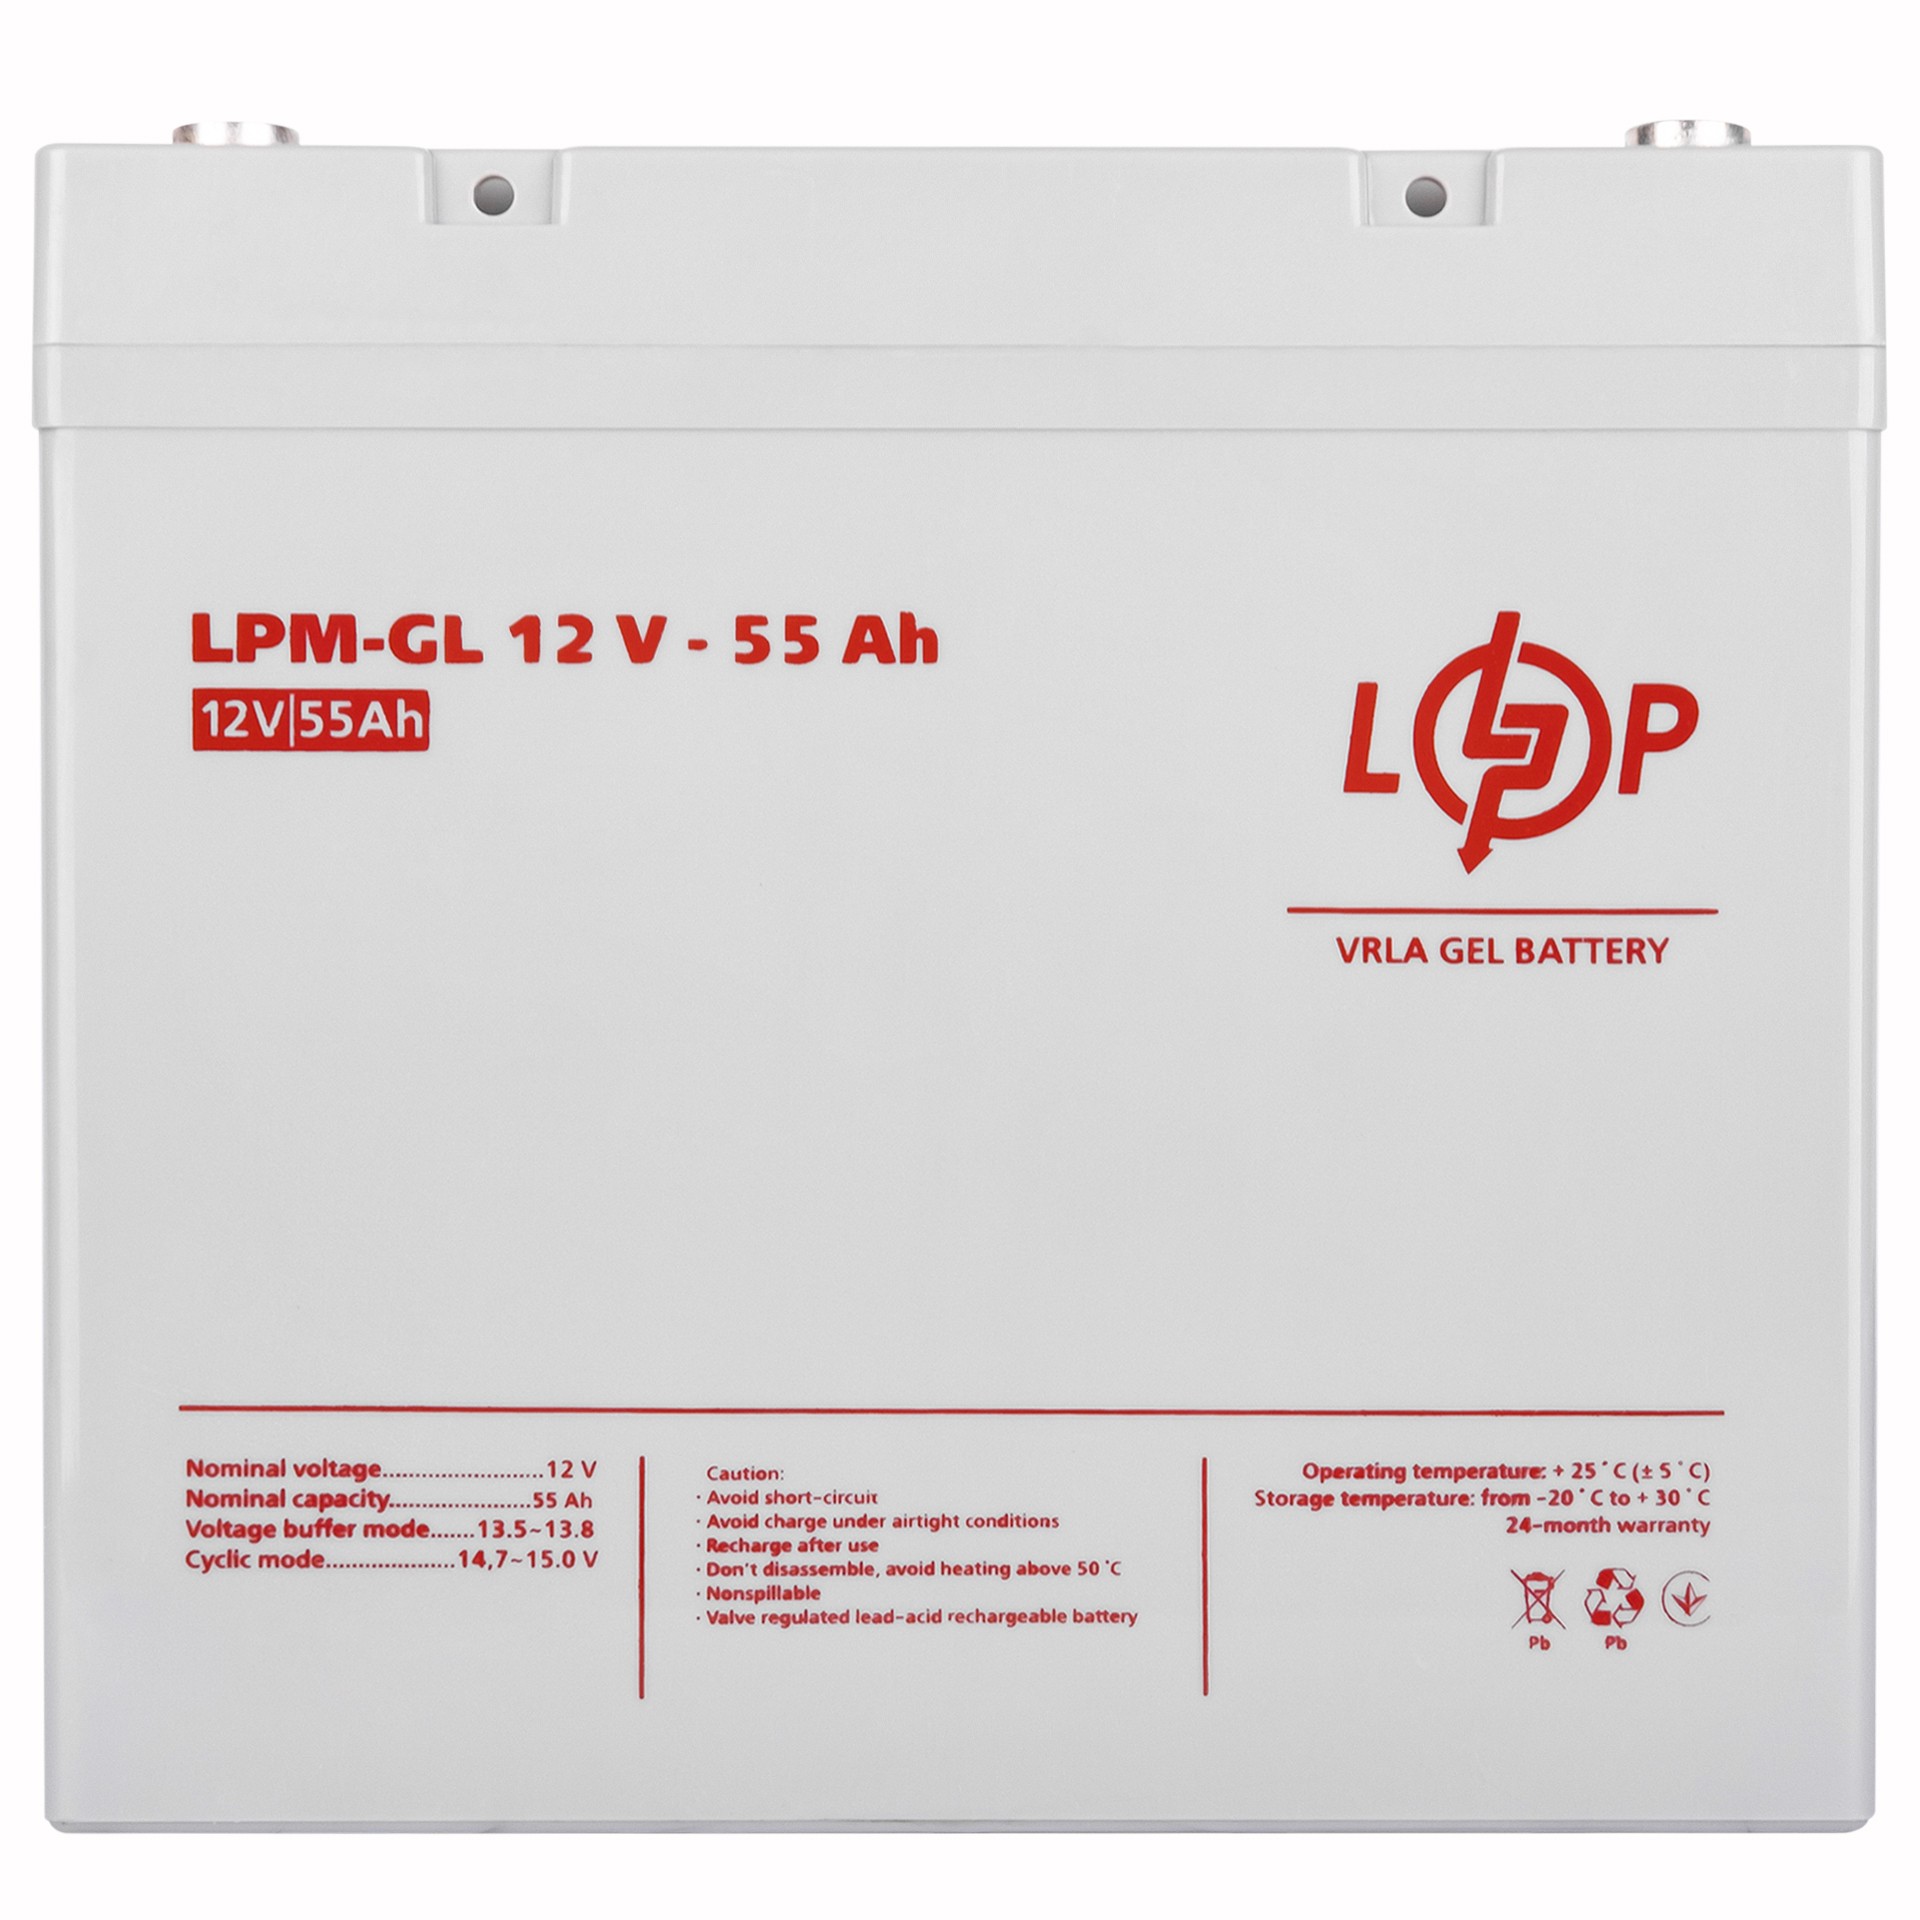 Купить аккумулятор 55 a·h LogicPower LPM-GL 12V - 55 Ah в Киеве